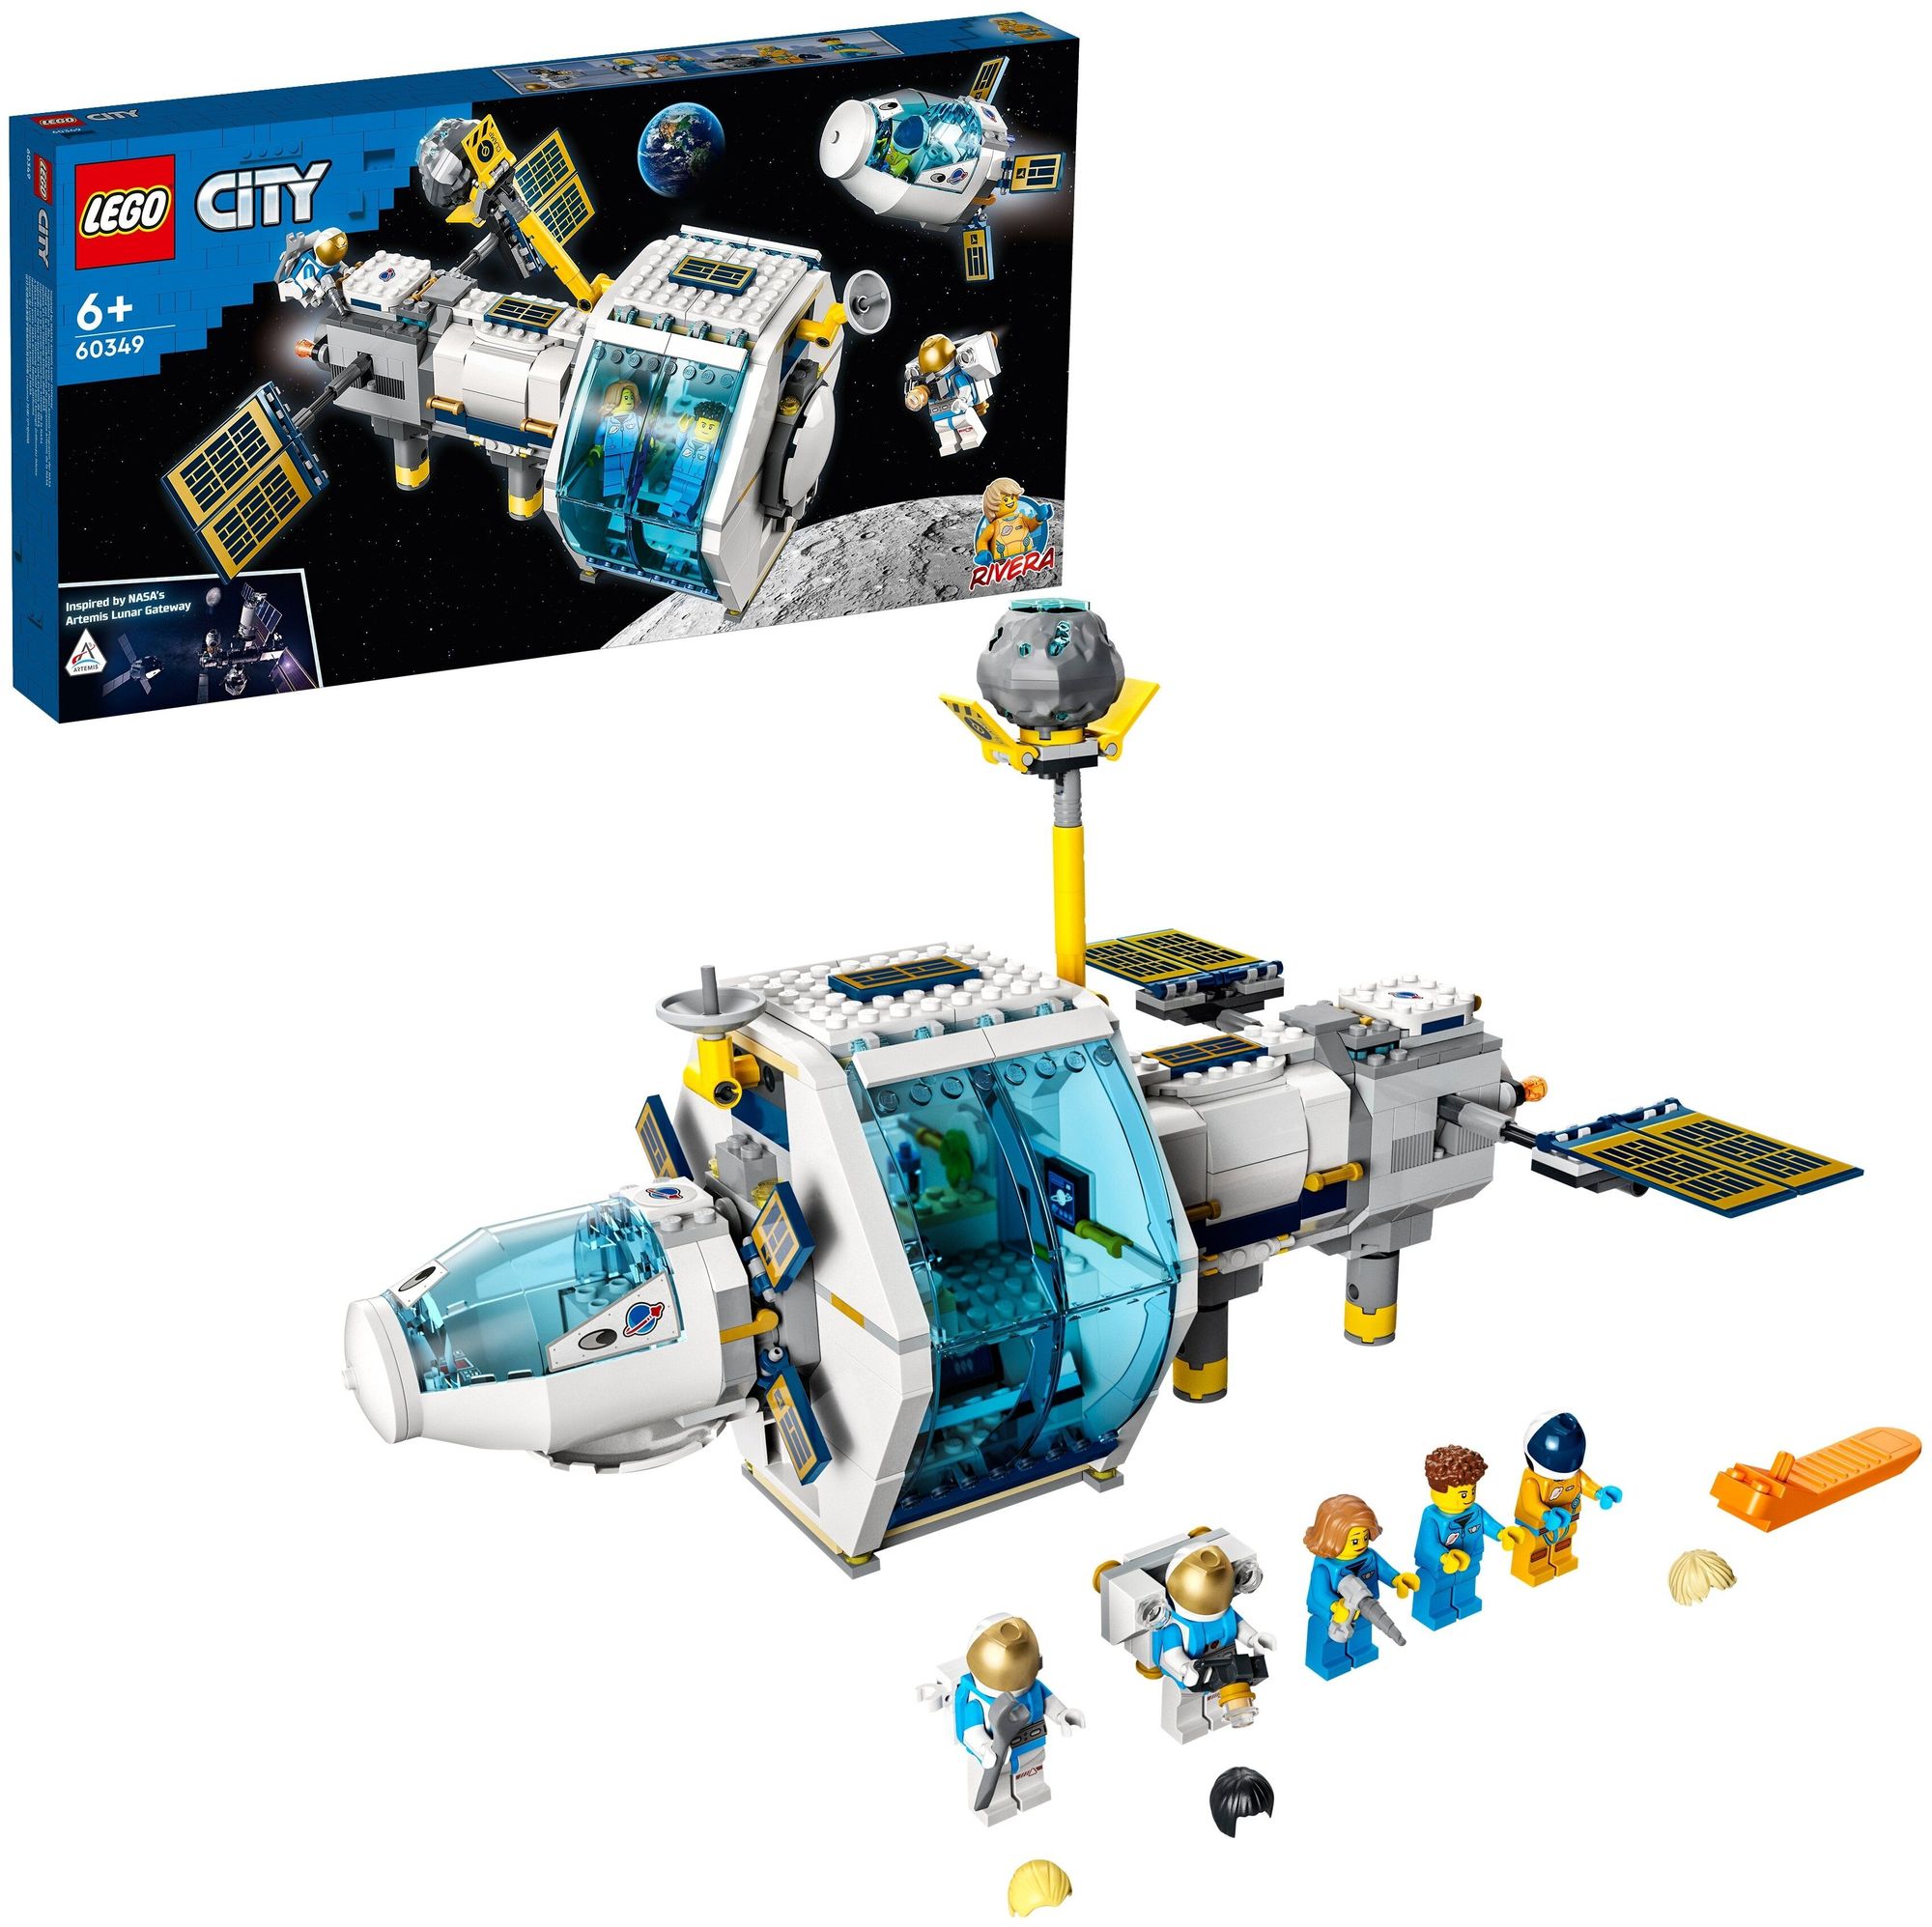 Конструктор LEGO City Лунная космическая станция 60349 конструктор lego ideas 92176 ракетно космическая система наса сатурн 5 аполлон